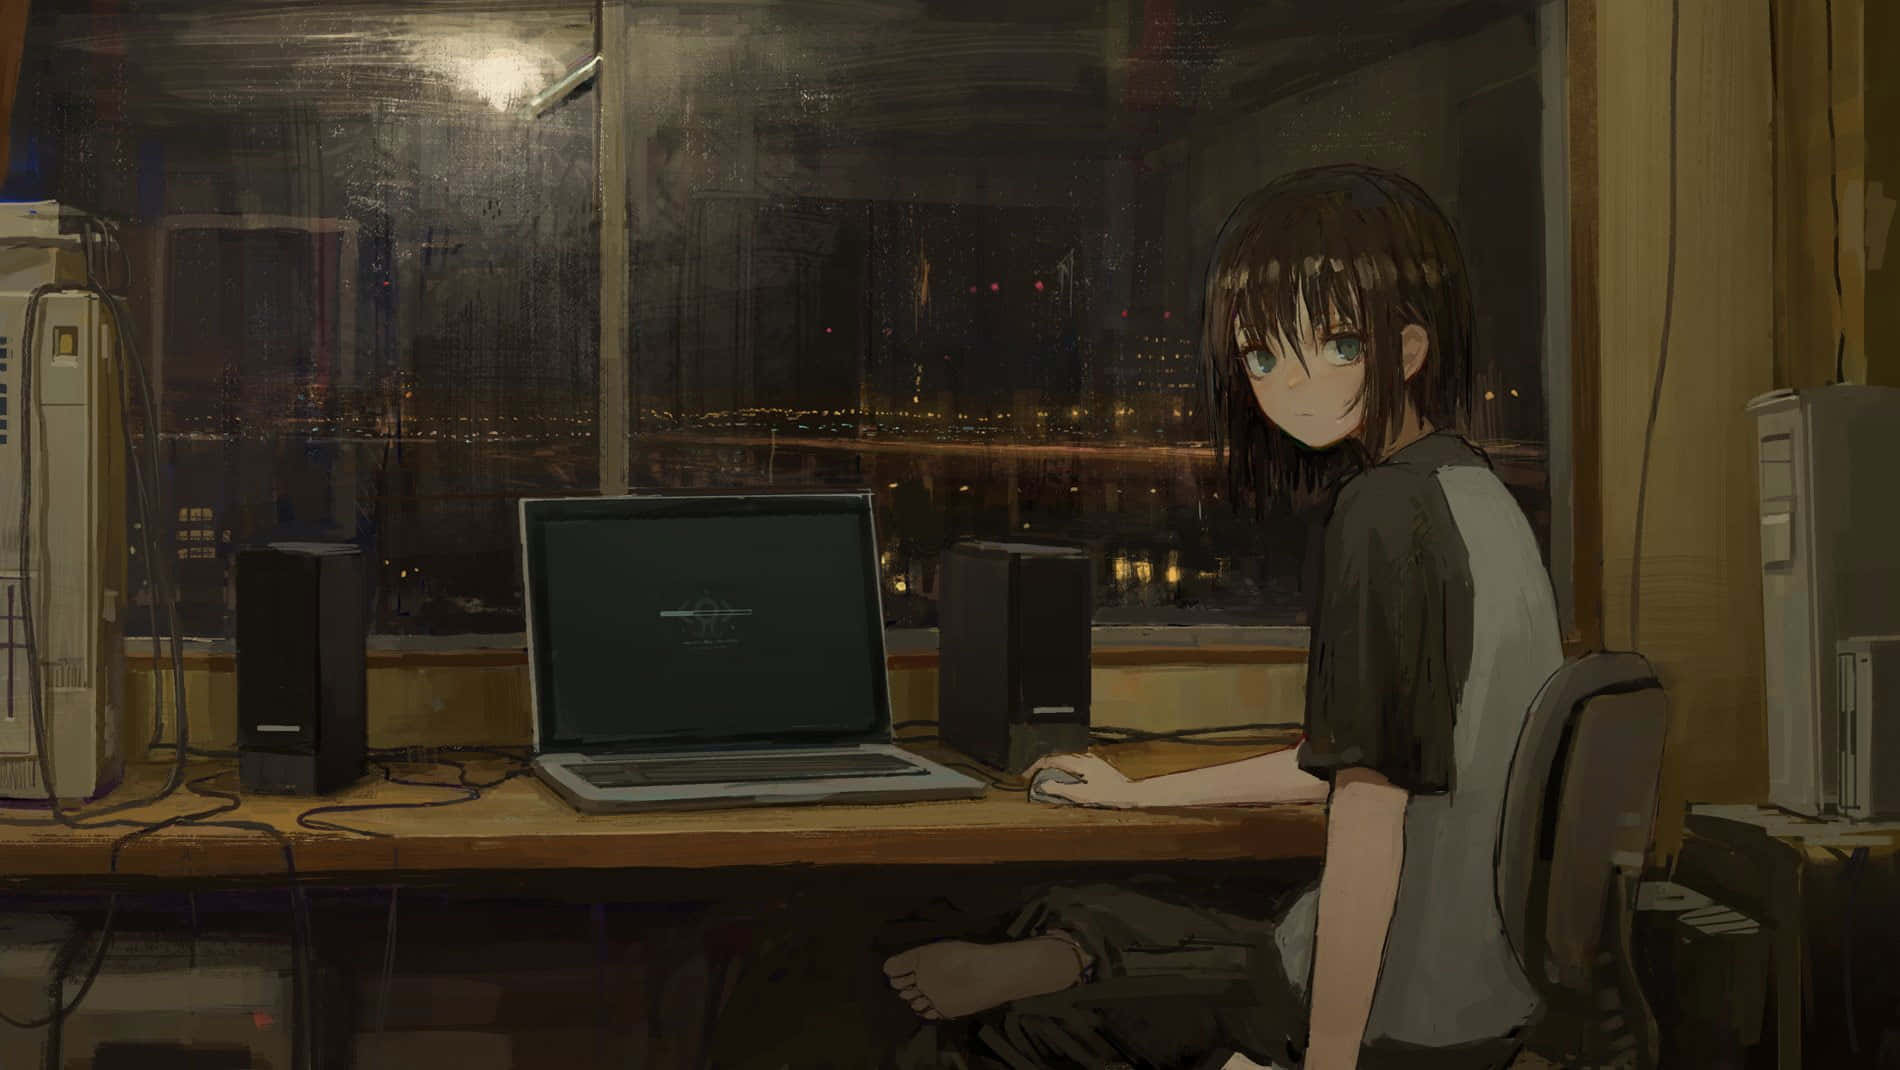 Chicaen Su Habitación De Anime Con Estilo Lo-fi. Fondo de pantalla